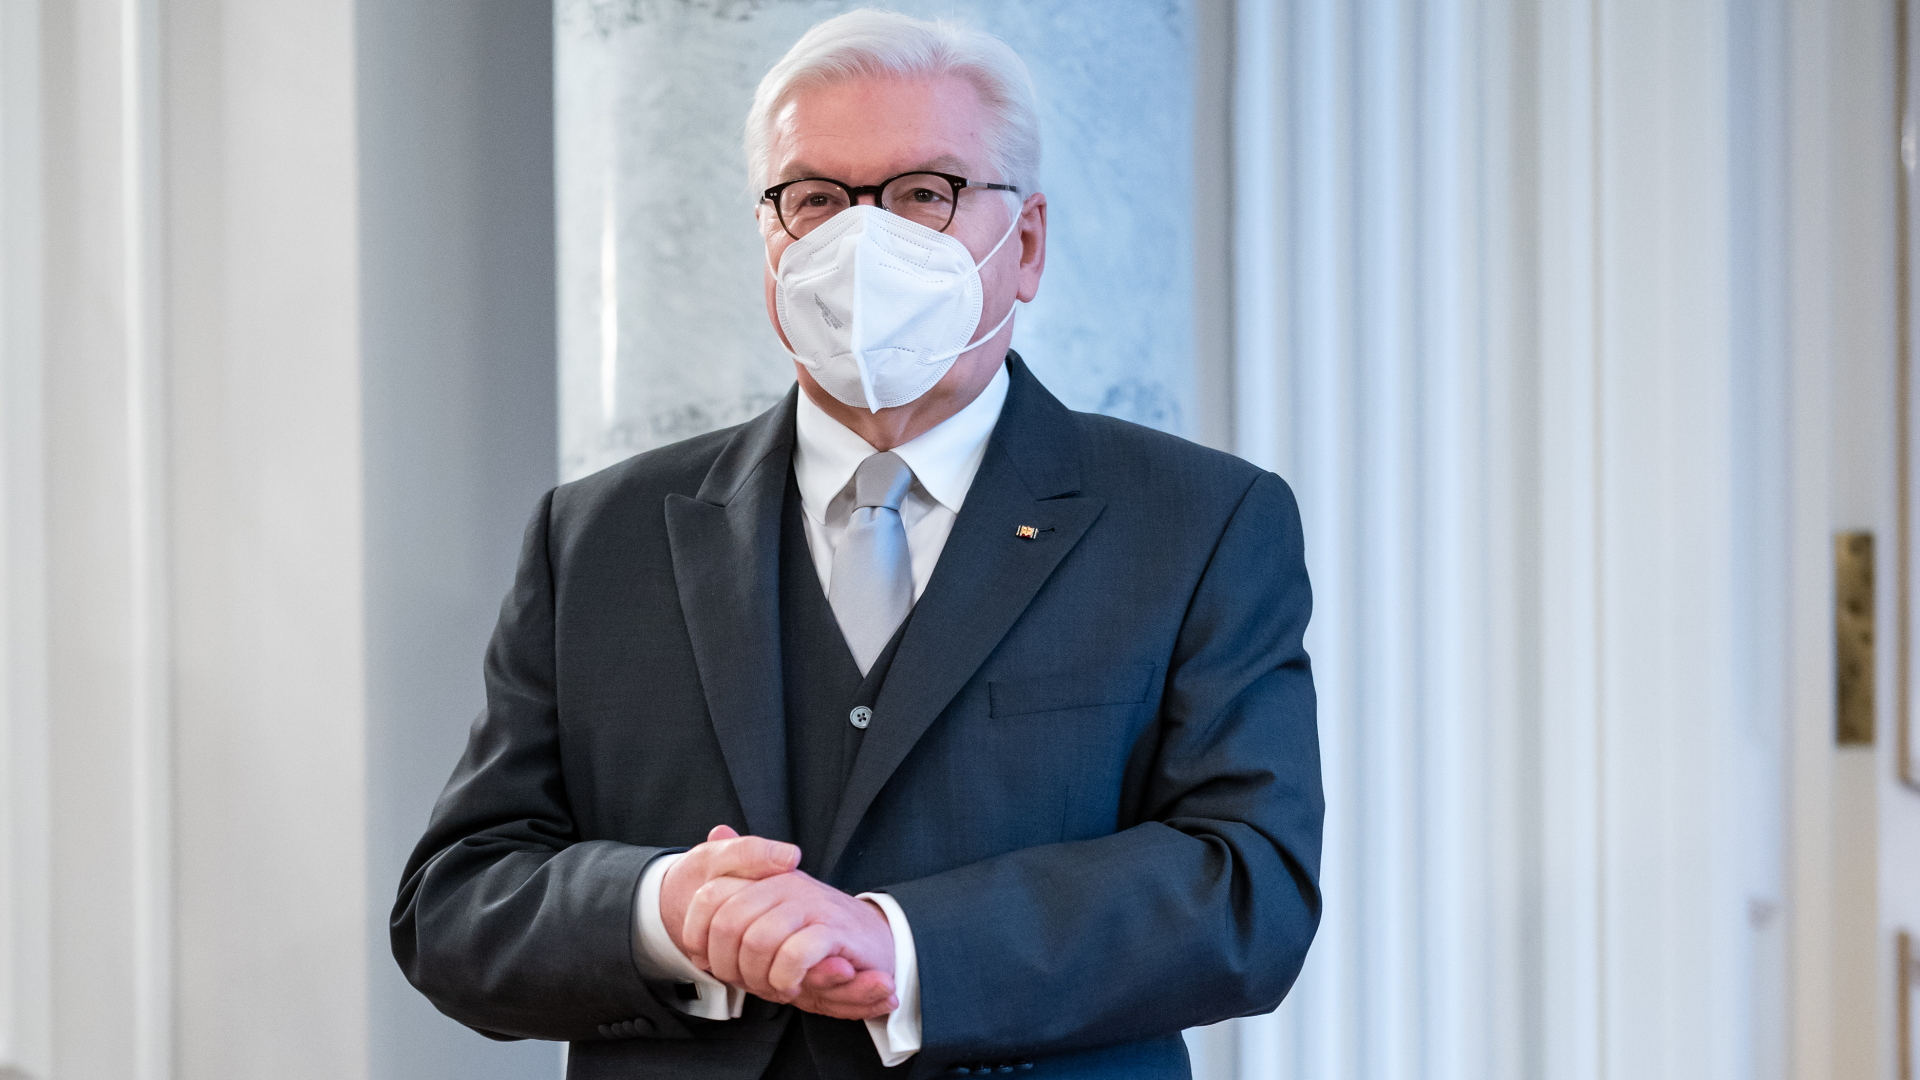 Bundespräsident Steinmeier mit FFP2-Maske | dpa